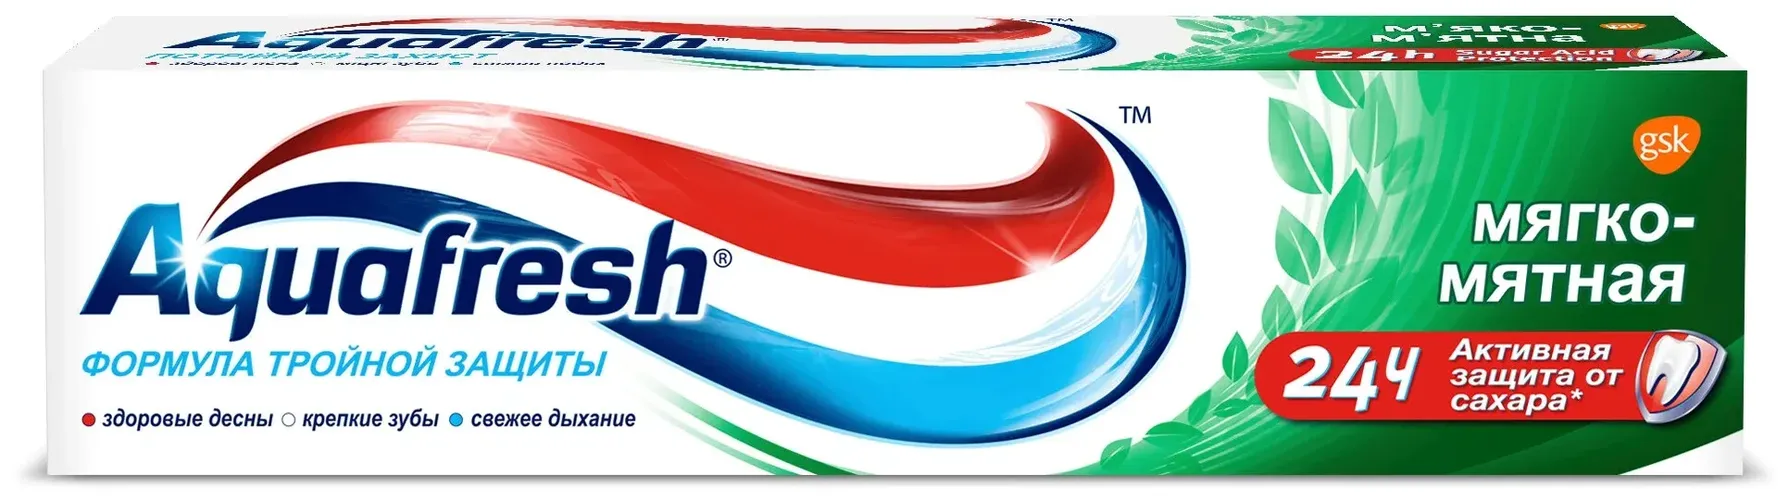 Зубная паста Aquafresh Мягко-мятная, 50 мл, купить недорого